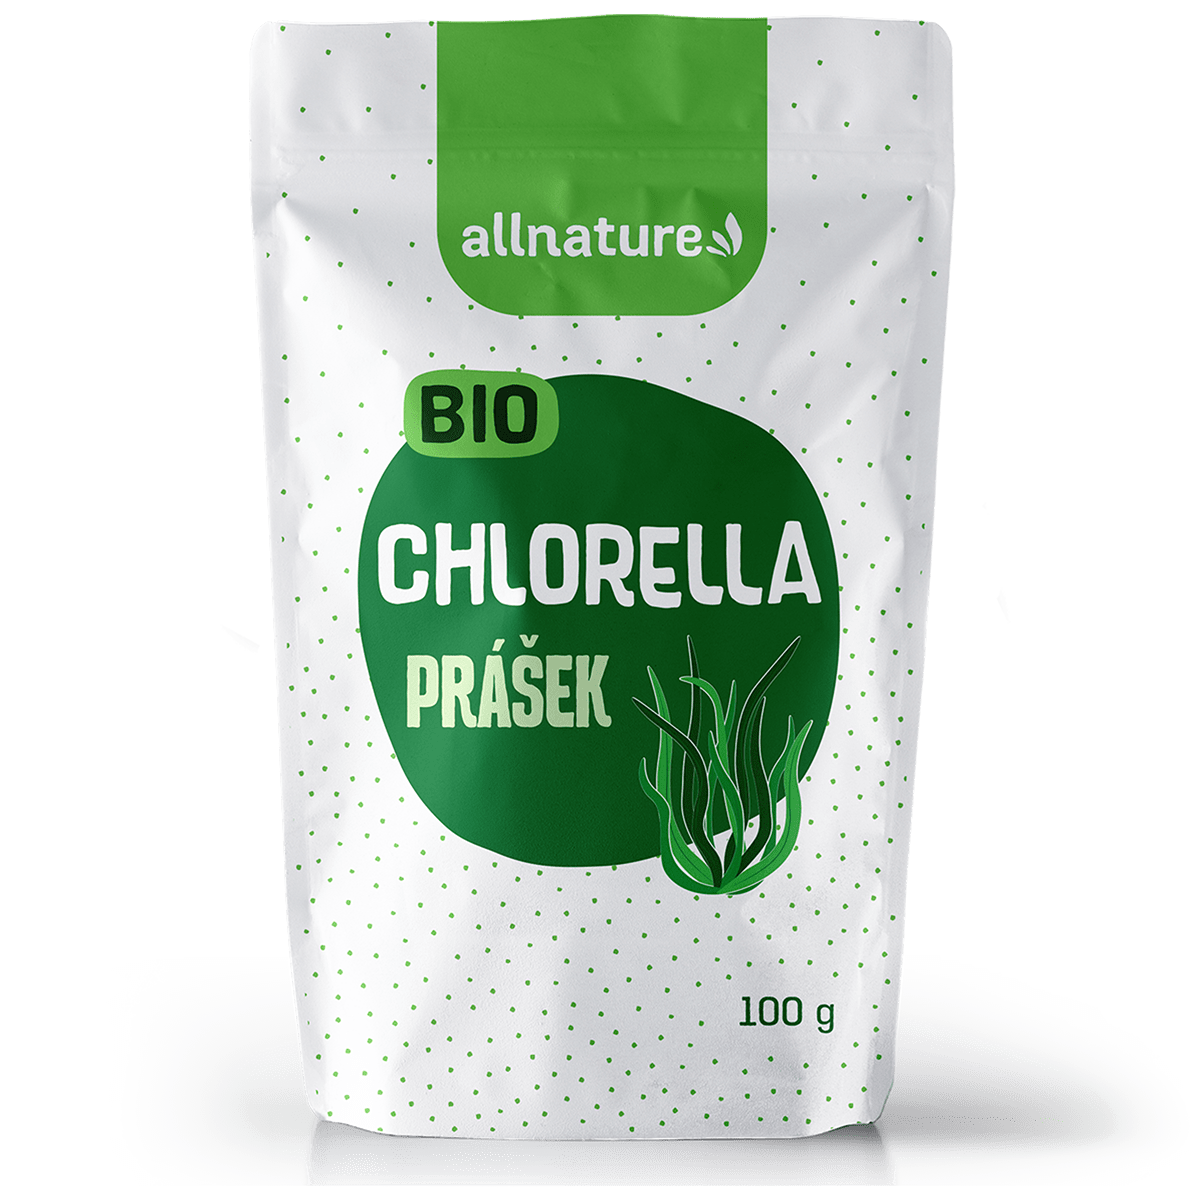 Allnature Chlorella prášek BIO (100 g) - podporuje trávení a správnou činnost jater